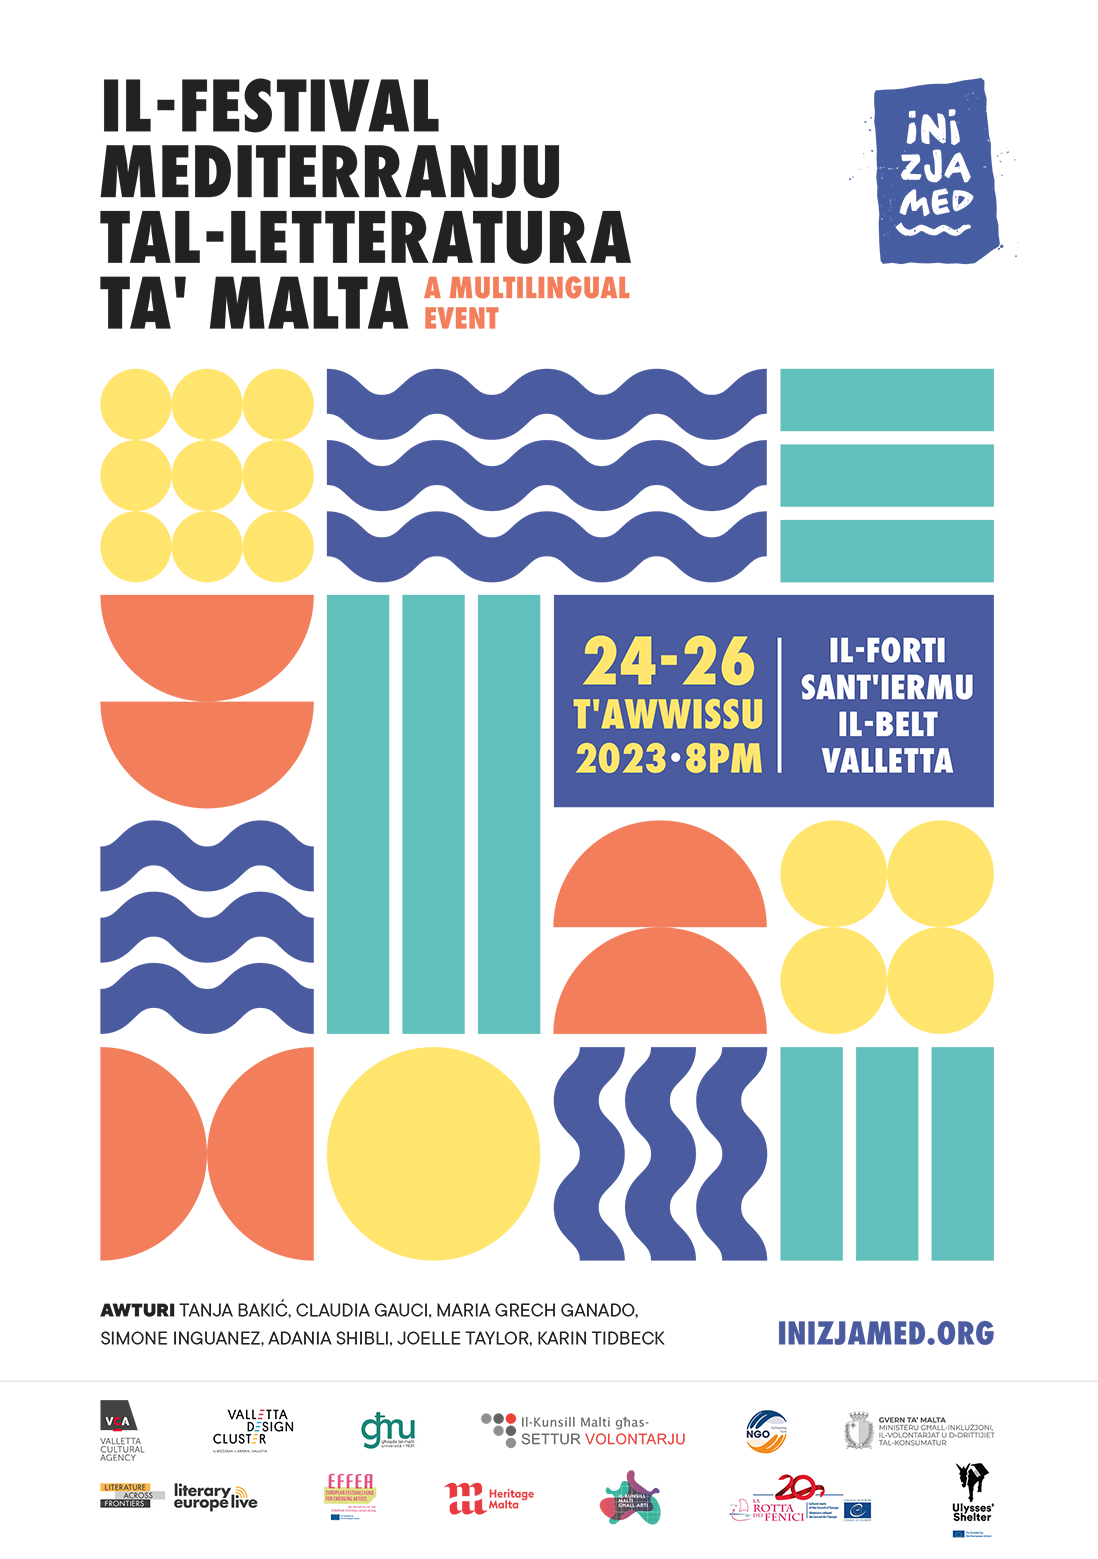 Il-Festival Mediterranju tal-Letteratura ta' Malta poster